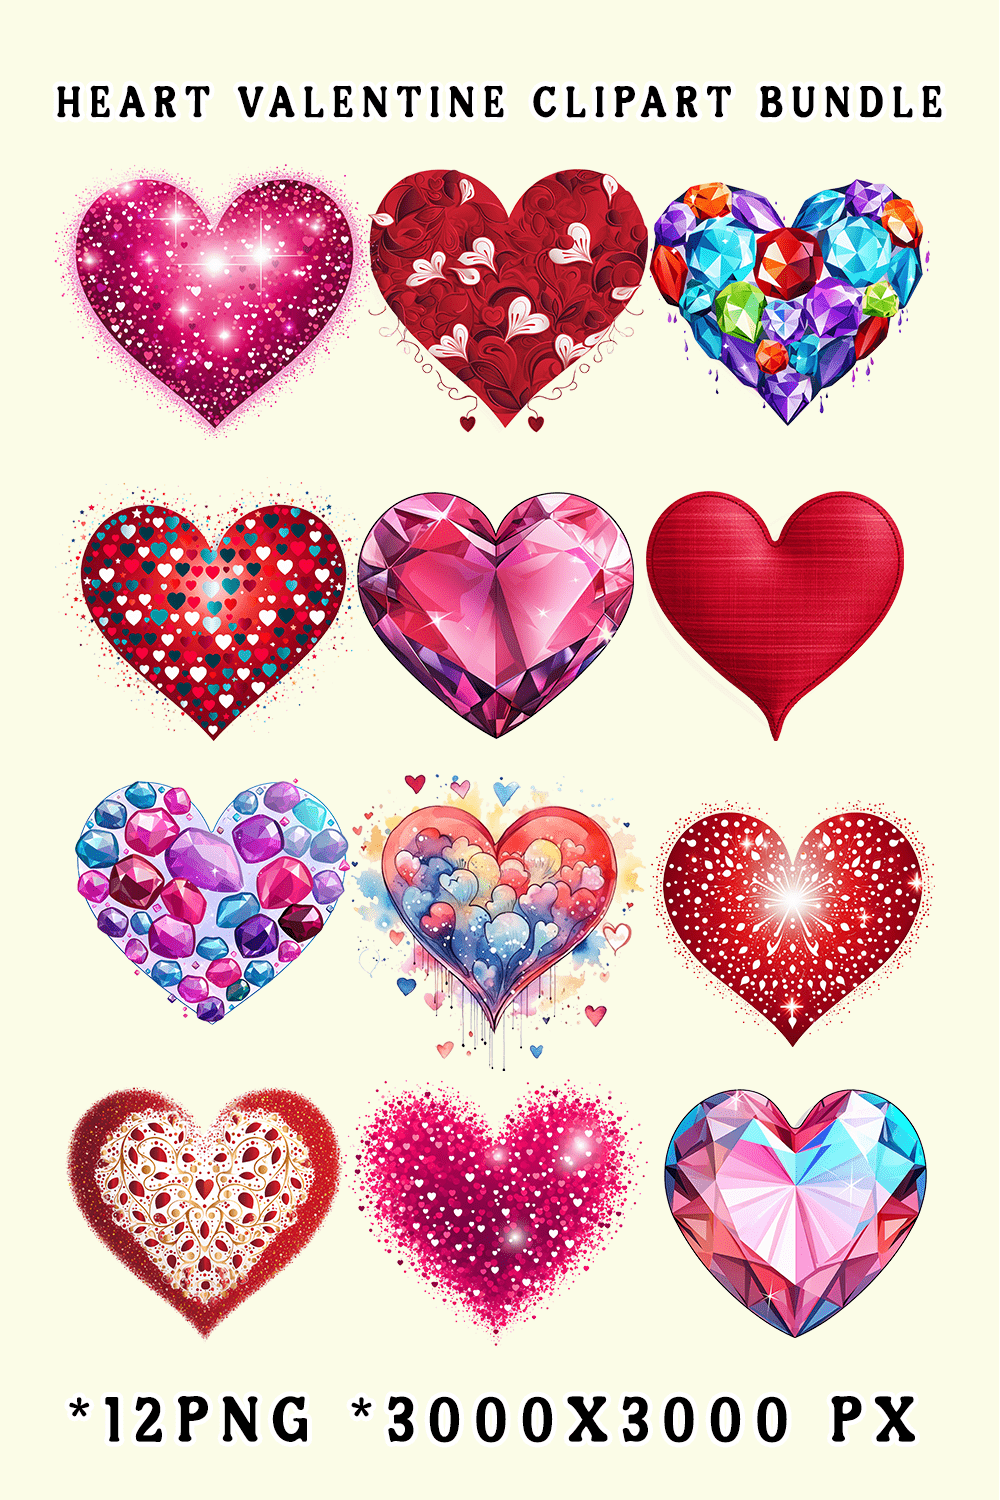 Heart Valentine Clipart Bundle pinterest preview image.